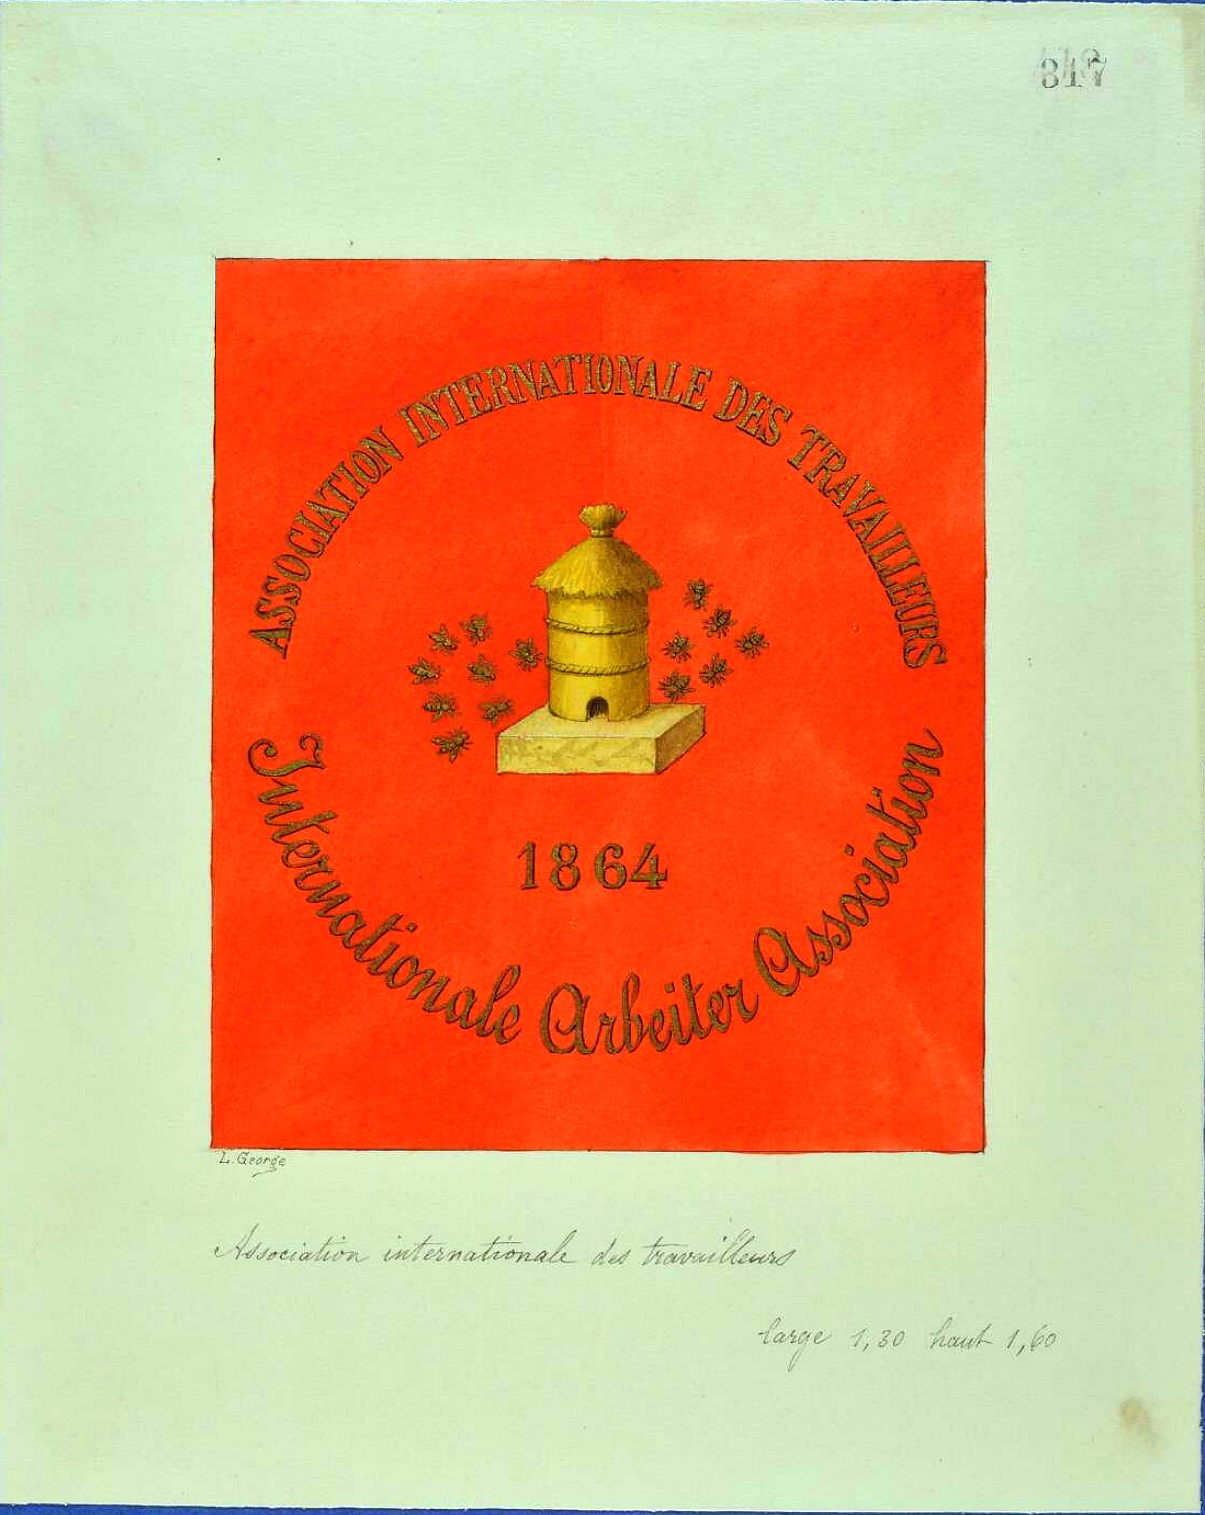 Drapeau genevois de l'Association Internationale des travailleurs en 1864.